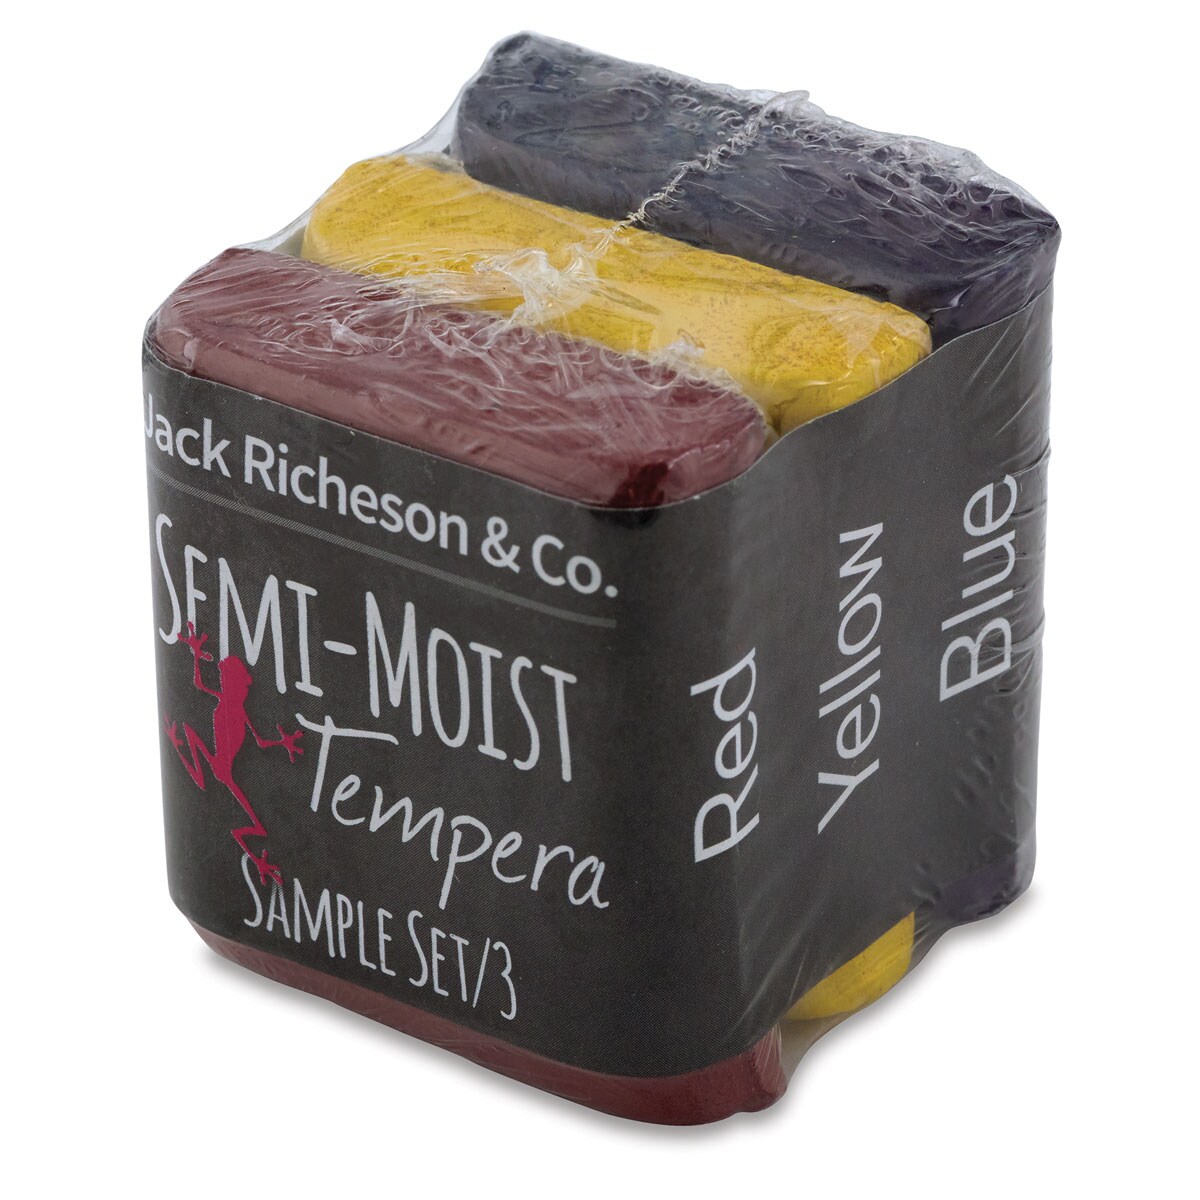 Richeson Semi-Moist Tempera Cake - 3 Color Refill Pack